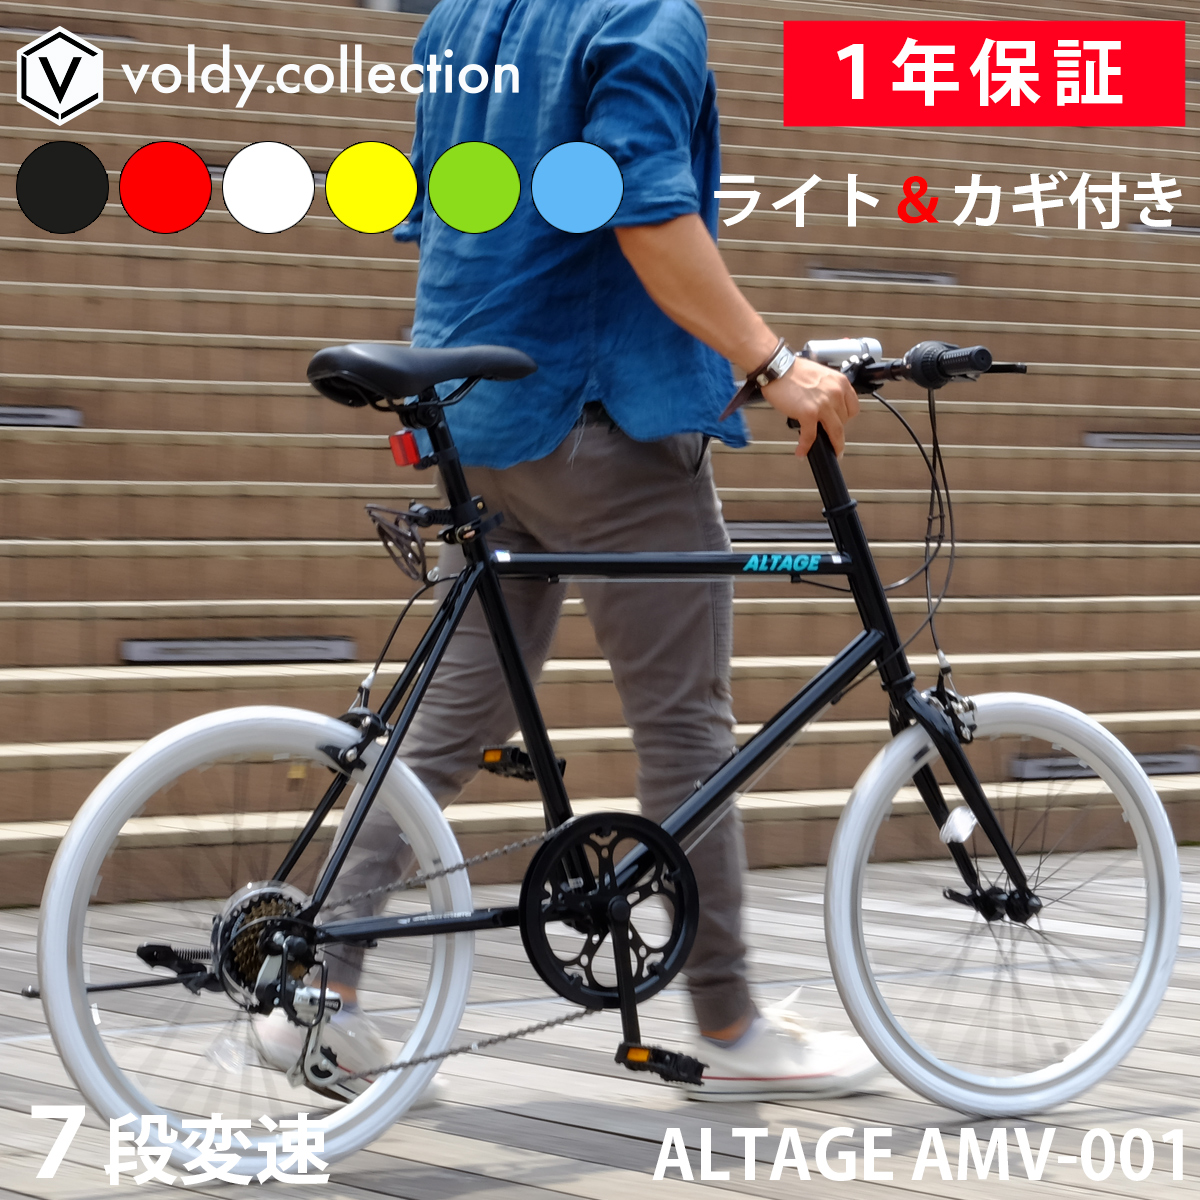 ミニベロ 小径自転車 20インチ シマノ7段変速 Fクイックリリース LEDライト・カギセット 軽量 コンパクトサイクル アルテージ ALTAGE  AMV-001